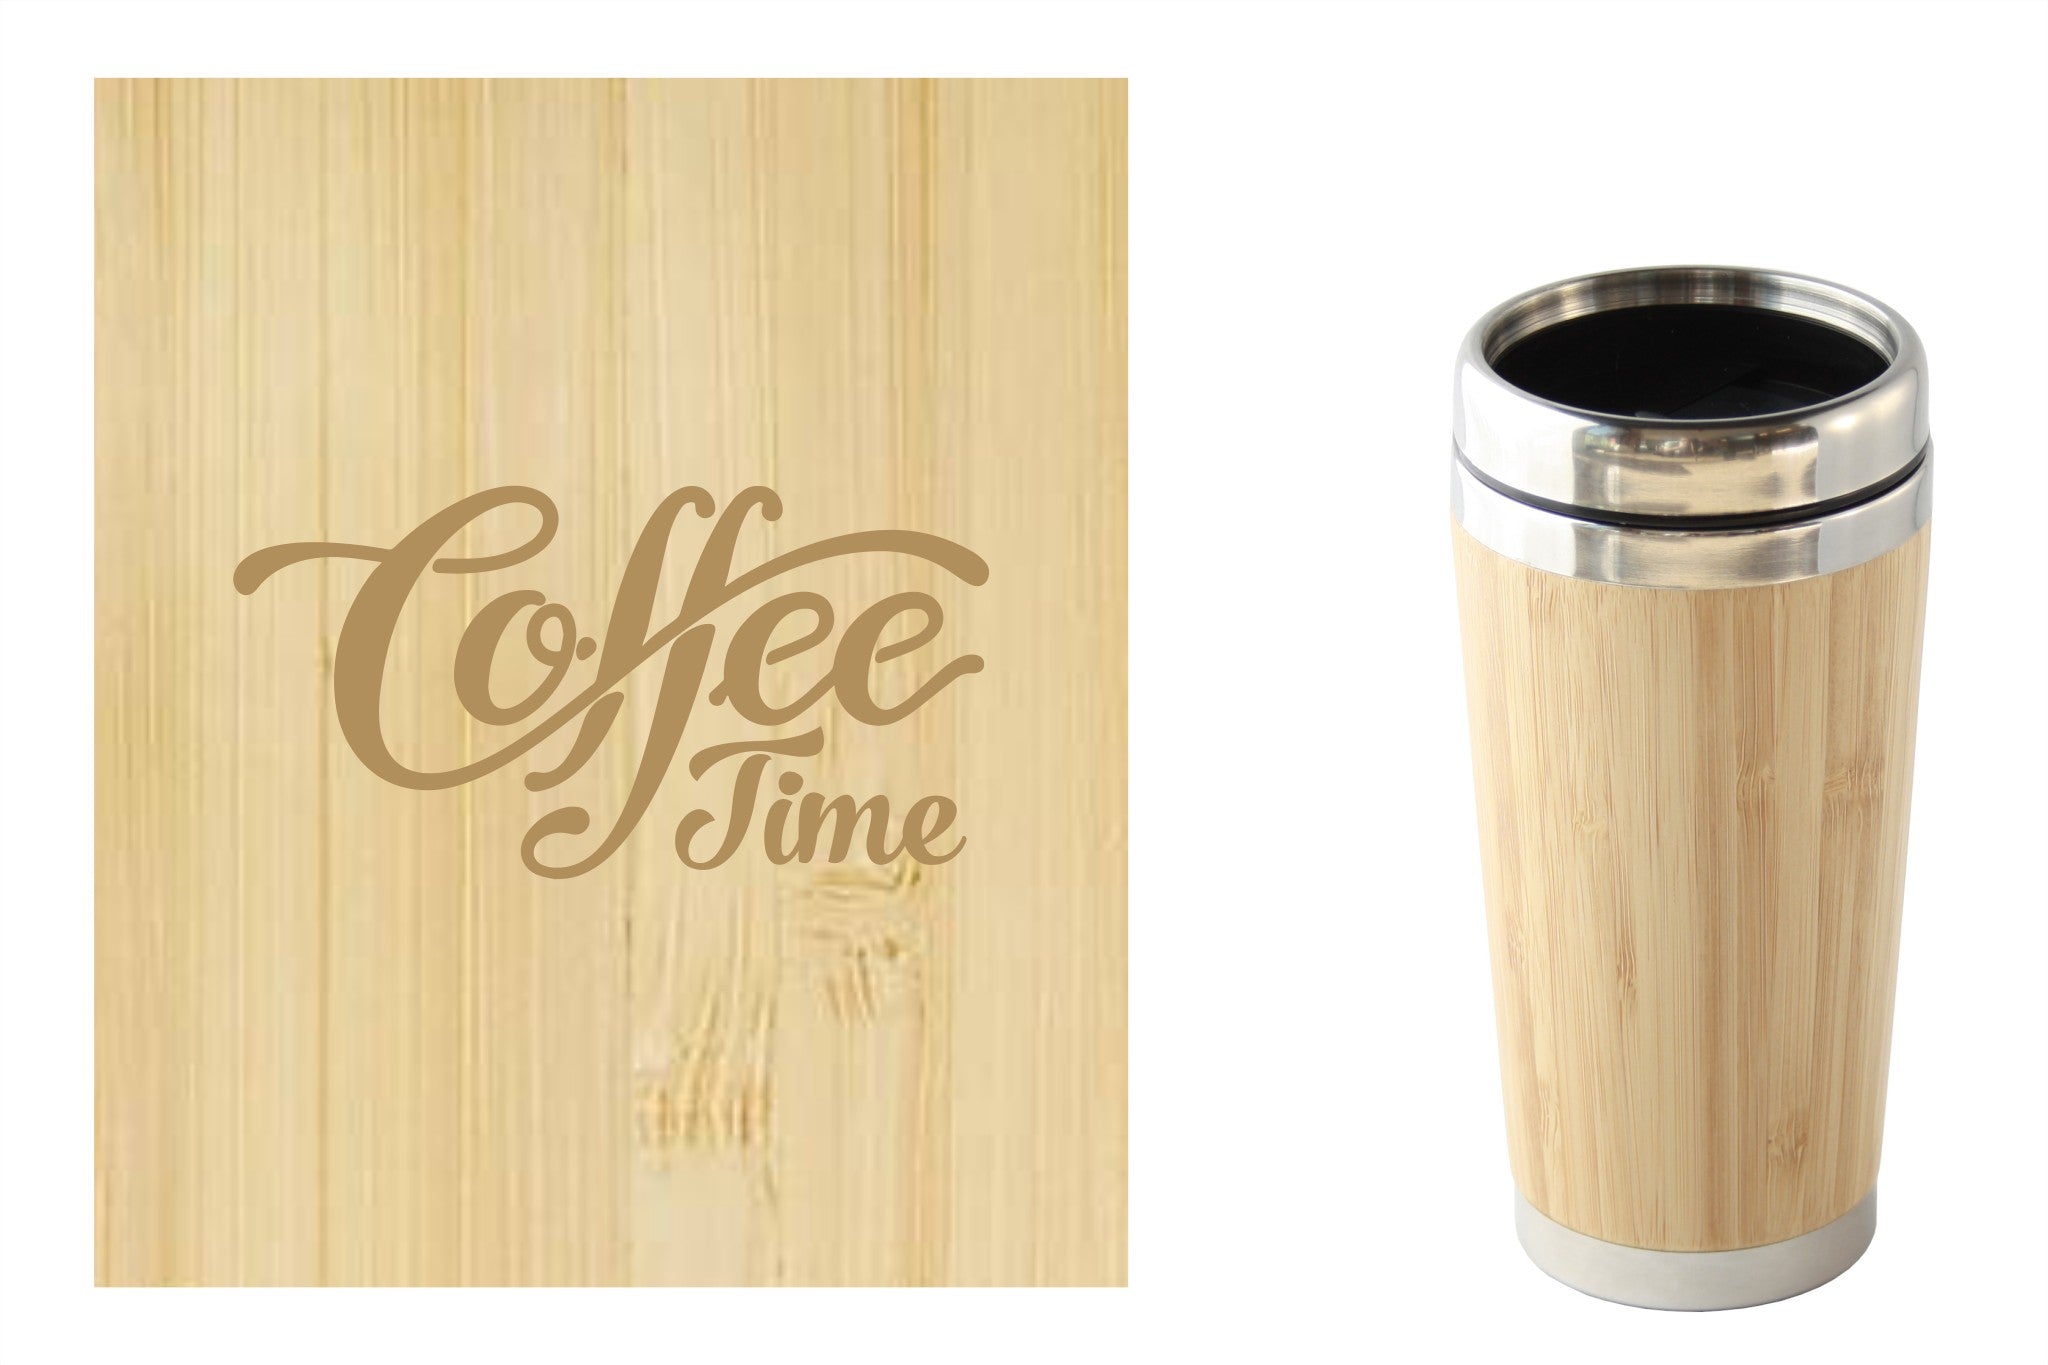 Bamboe reismok met 'Coffee time' tekst, perfect voor onderweg. Duurzaam en milieuvriendelijk.